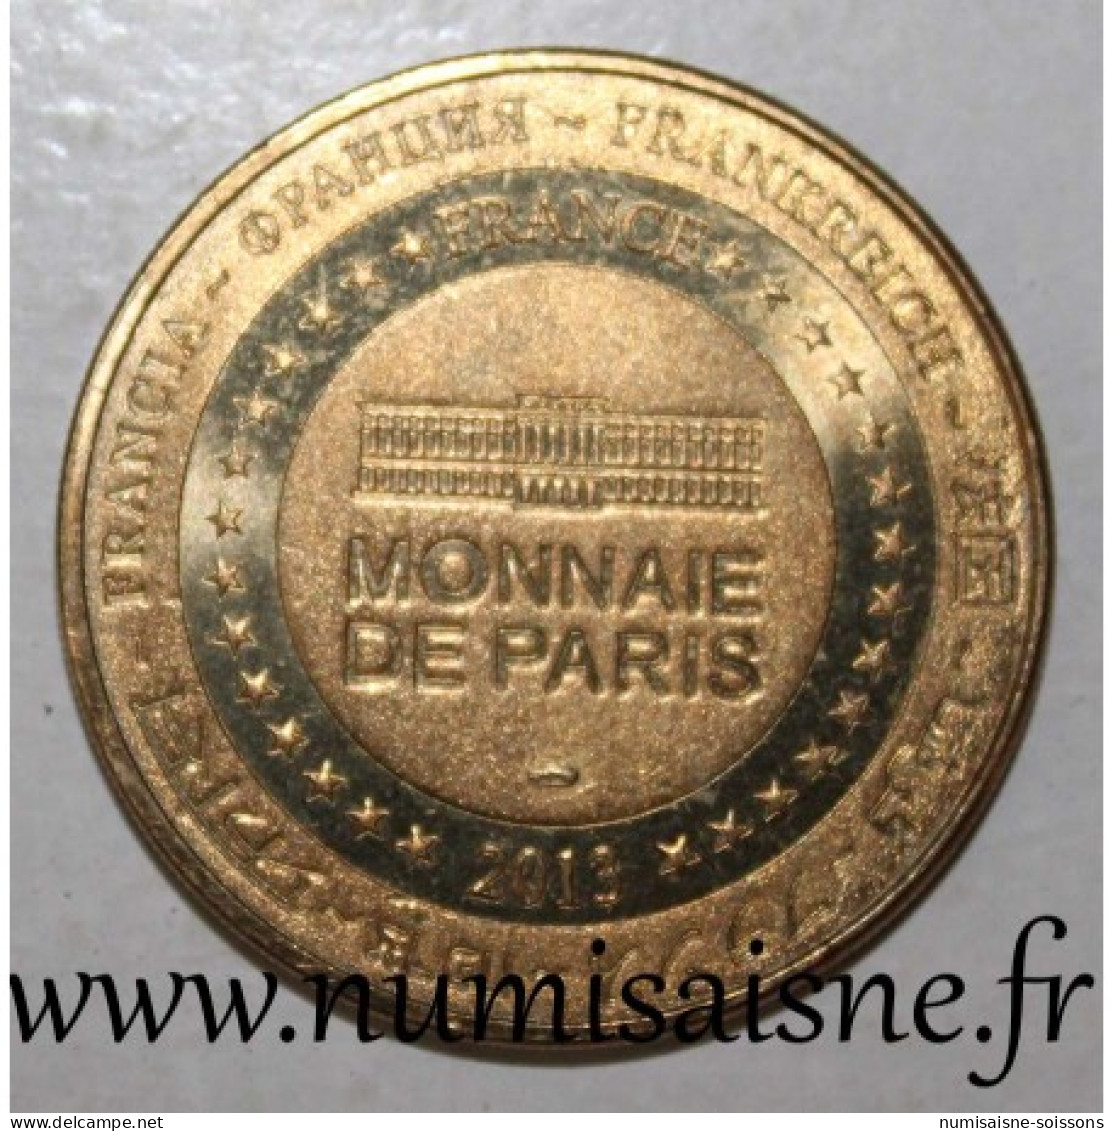 12 - PEYRELEAU - MONTPELLIER LE VIEUX - Monnaie De Paris - 2013 - 2013